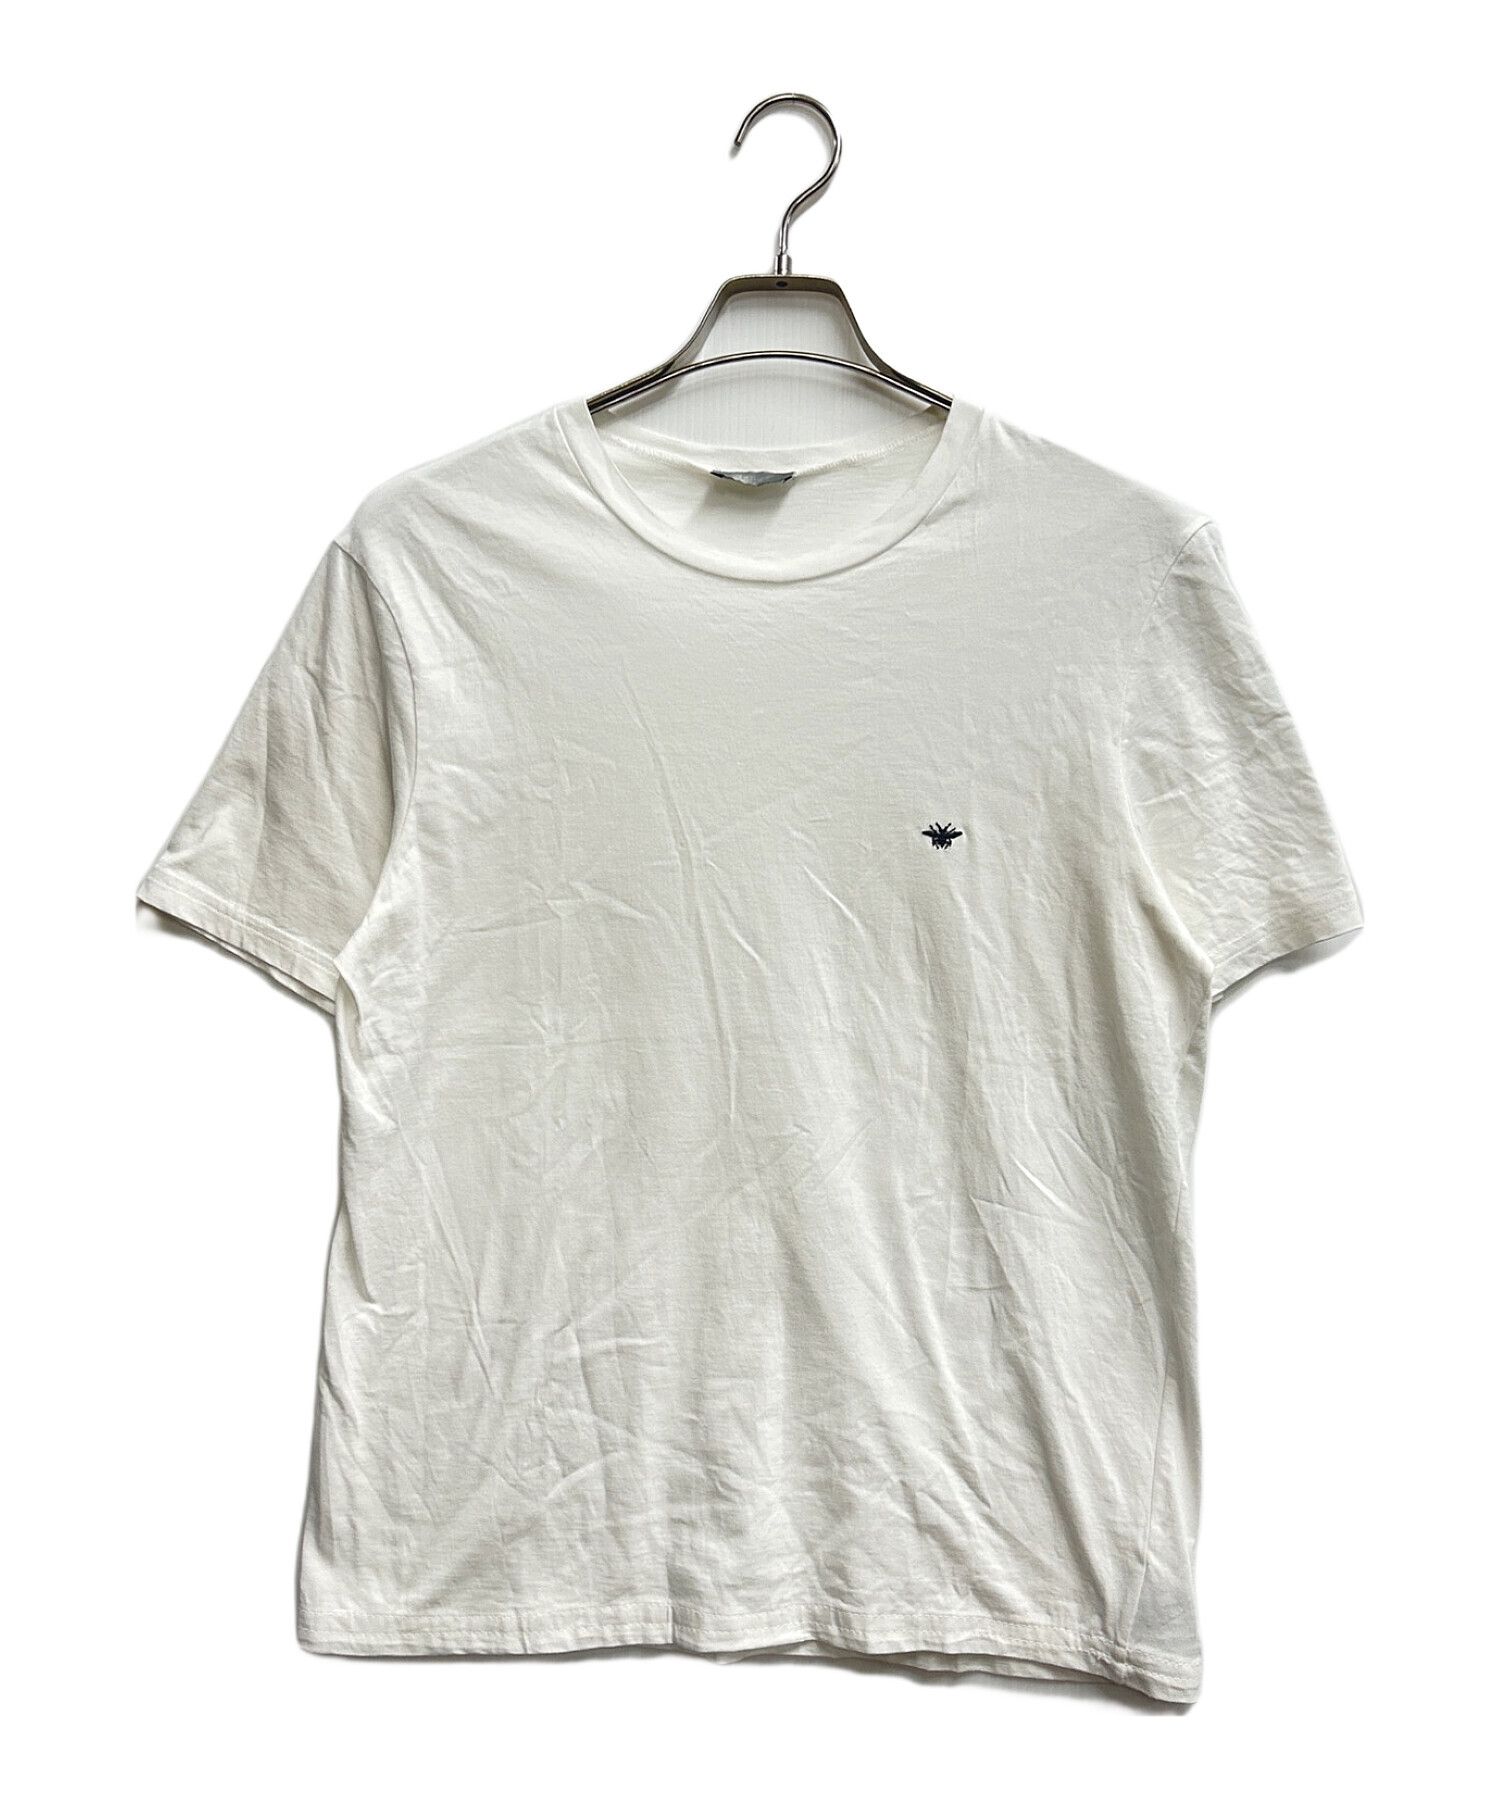 Christian Dior (クリスチャン ディオール) Tシャツ ホワイト サイズ:S